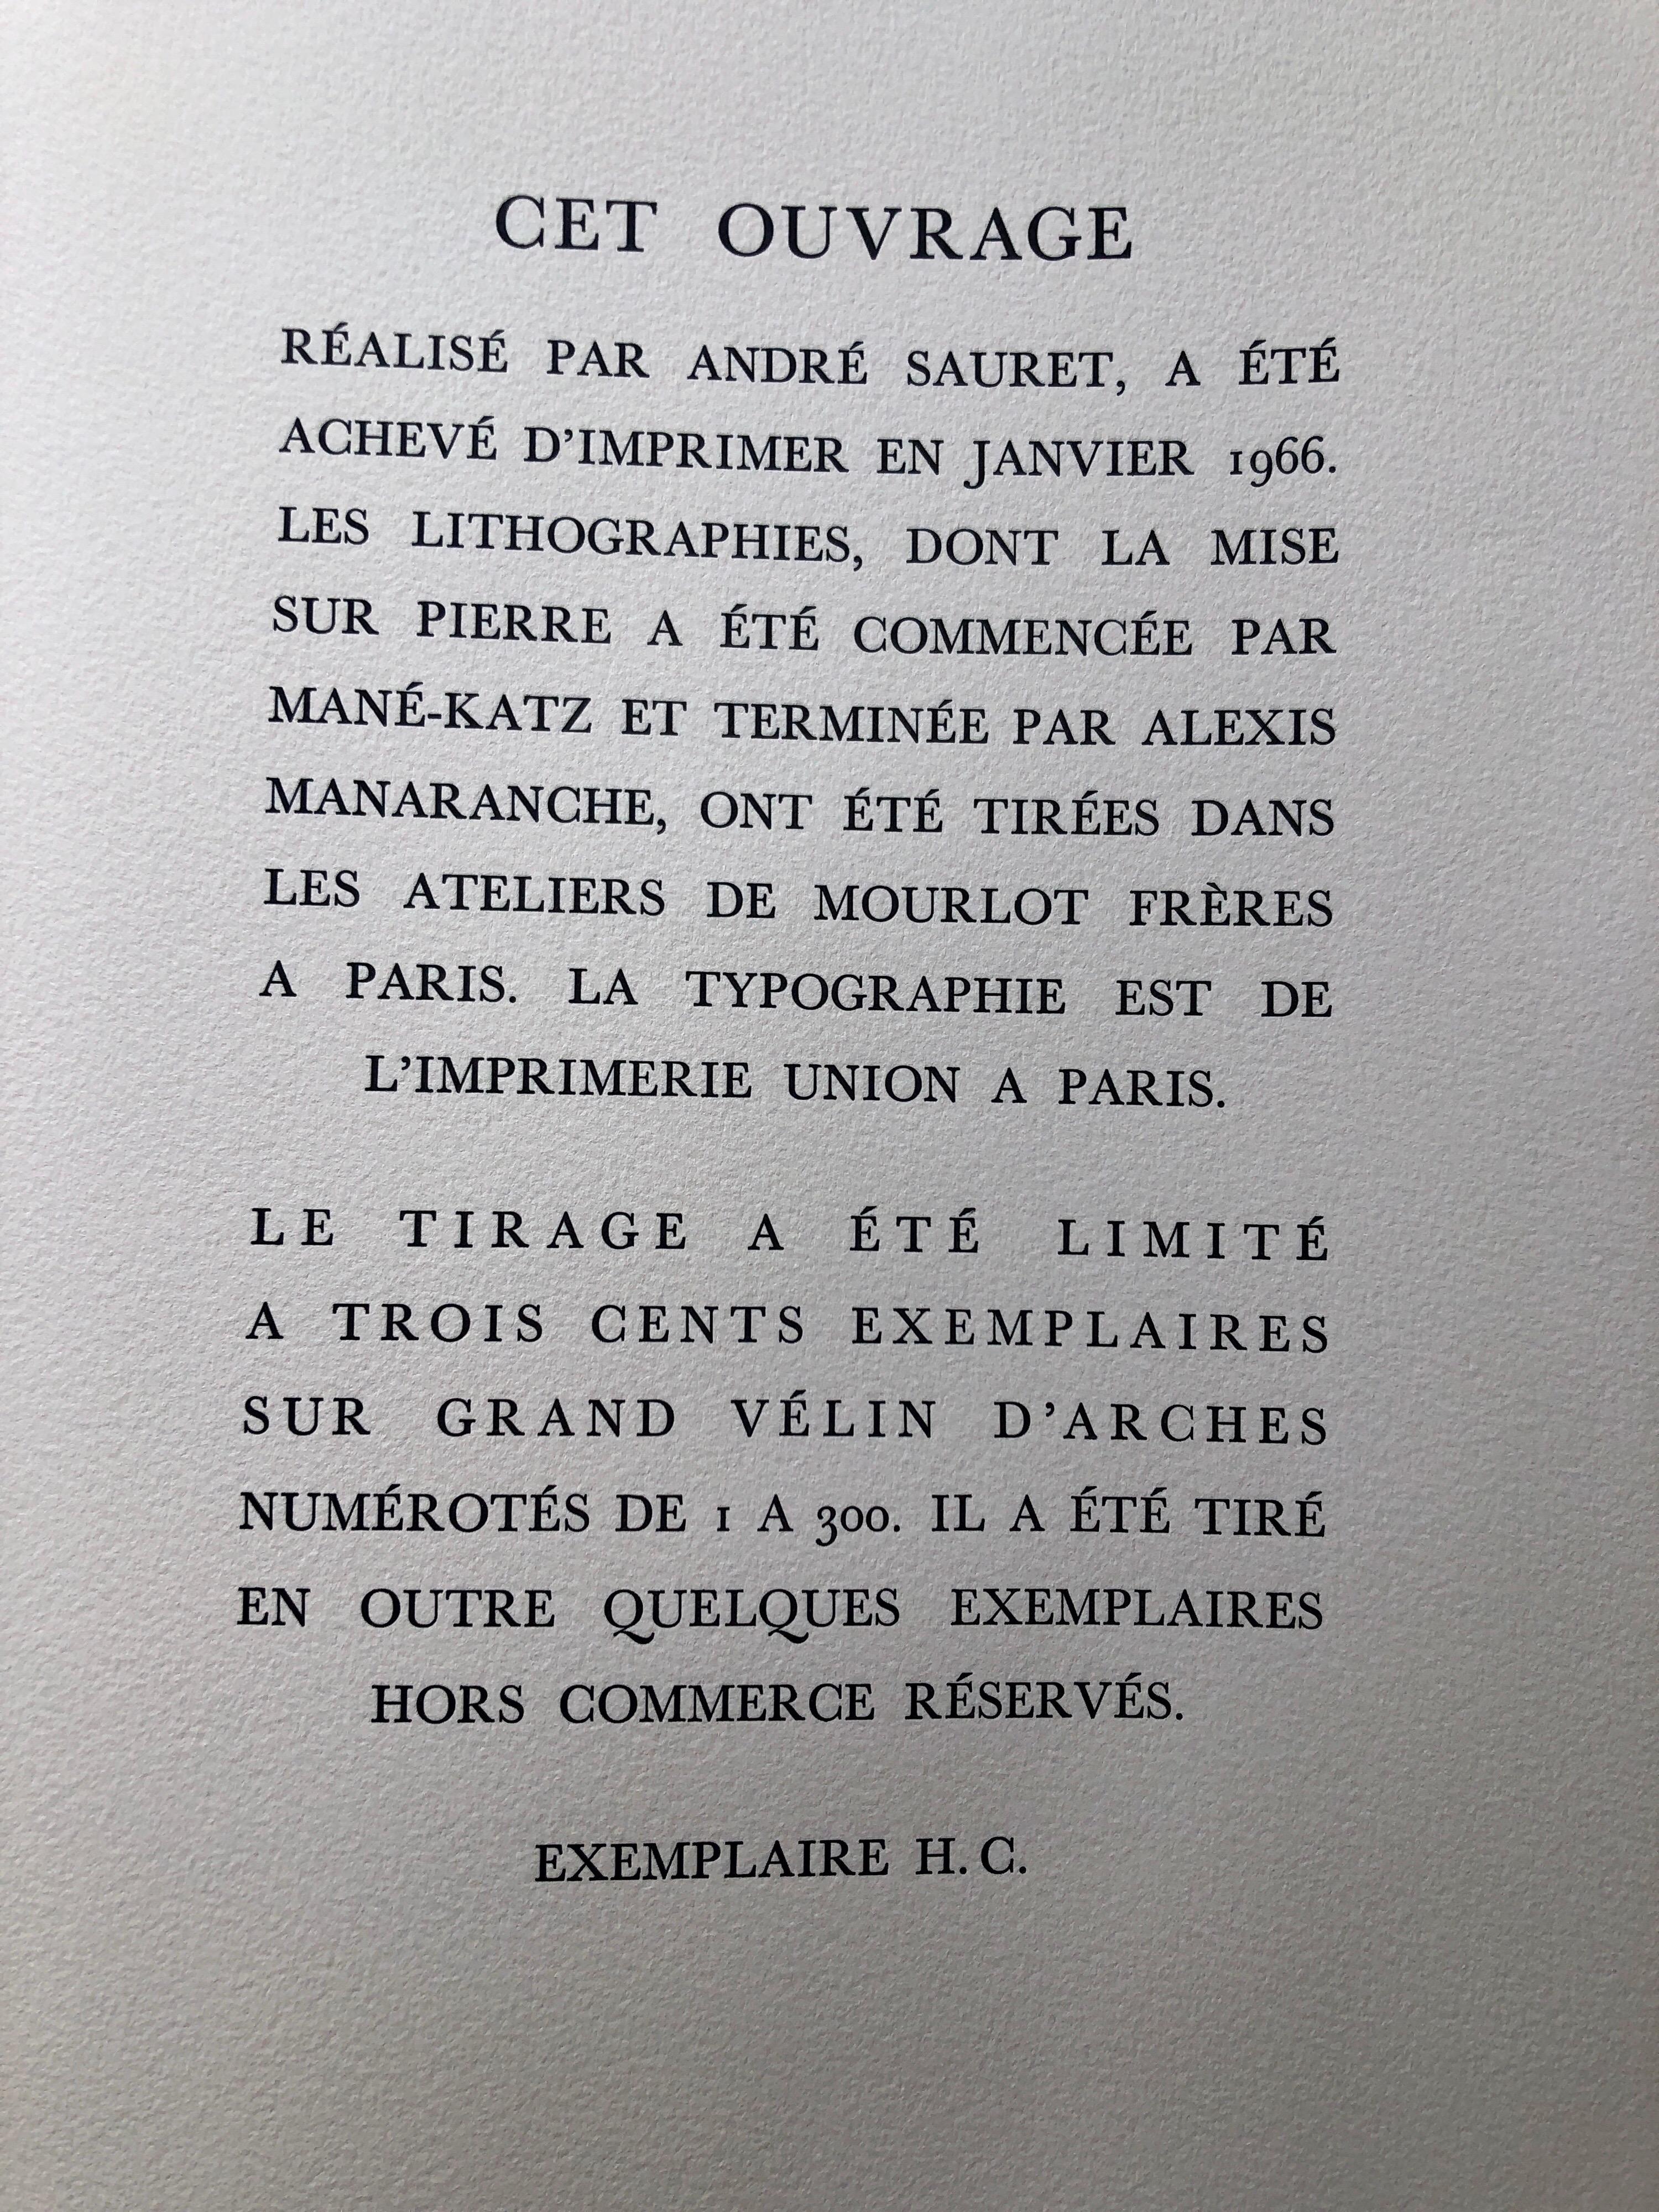 Mane-Katz (1894-1962) Lithographie originale publiée par Andre Sauret, Monte Carlo, 1966, imprimée en France, par Mourlot. Le feuillet de l'ouvrage n'est pas inclus. il s'agit d'une édition limitée à 300 exemplaires et quelques épreuves. elle n'est